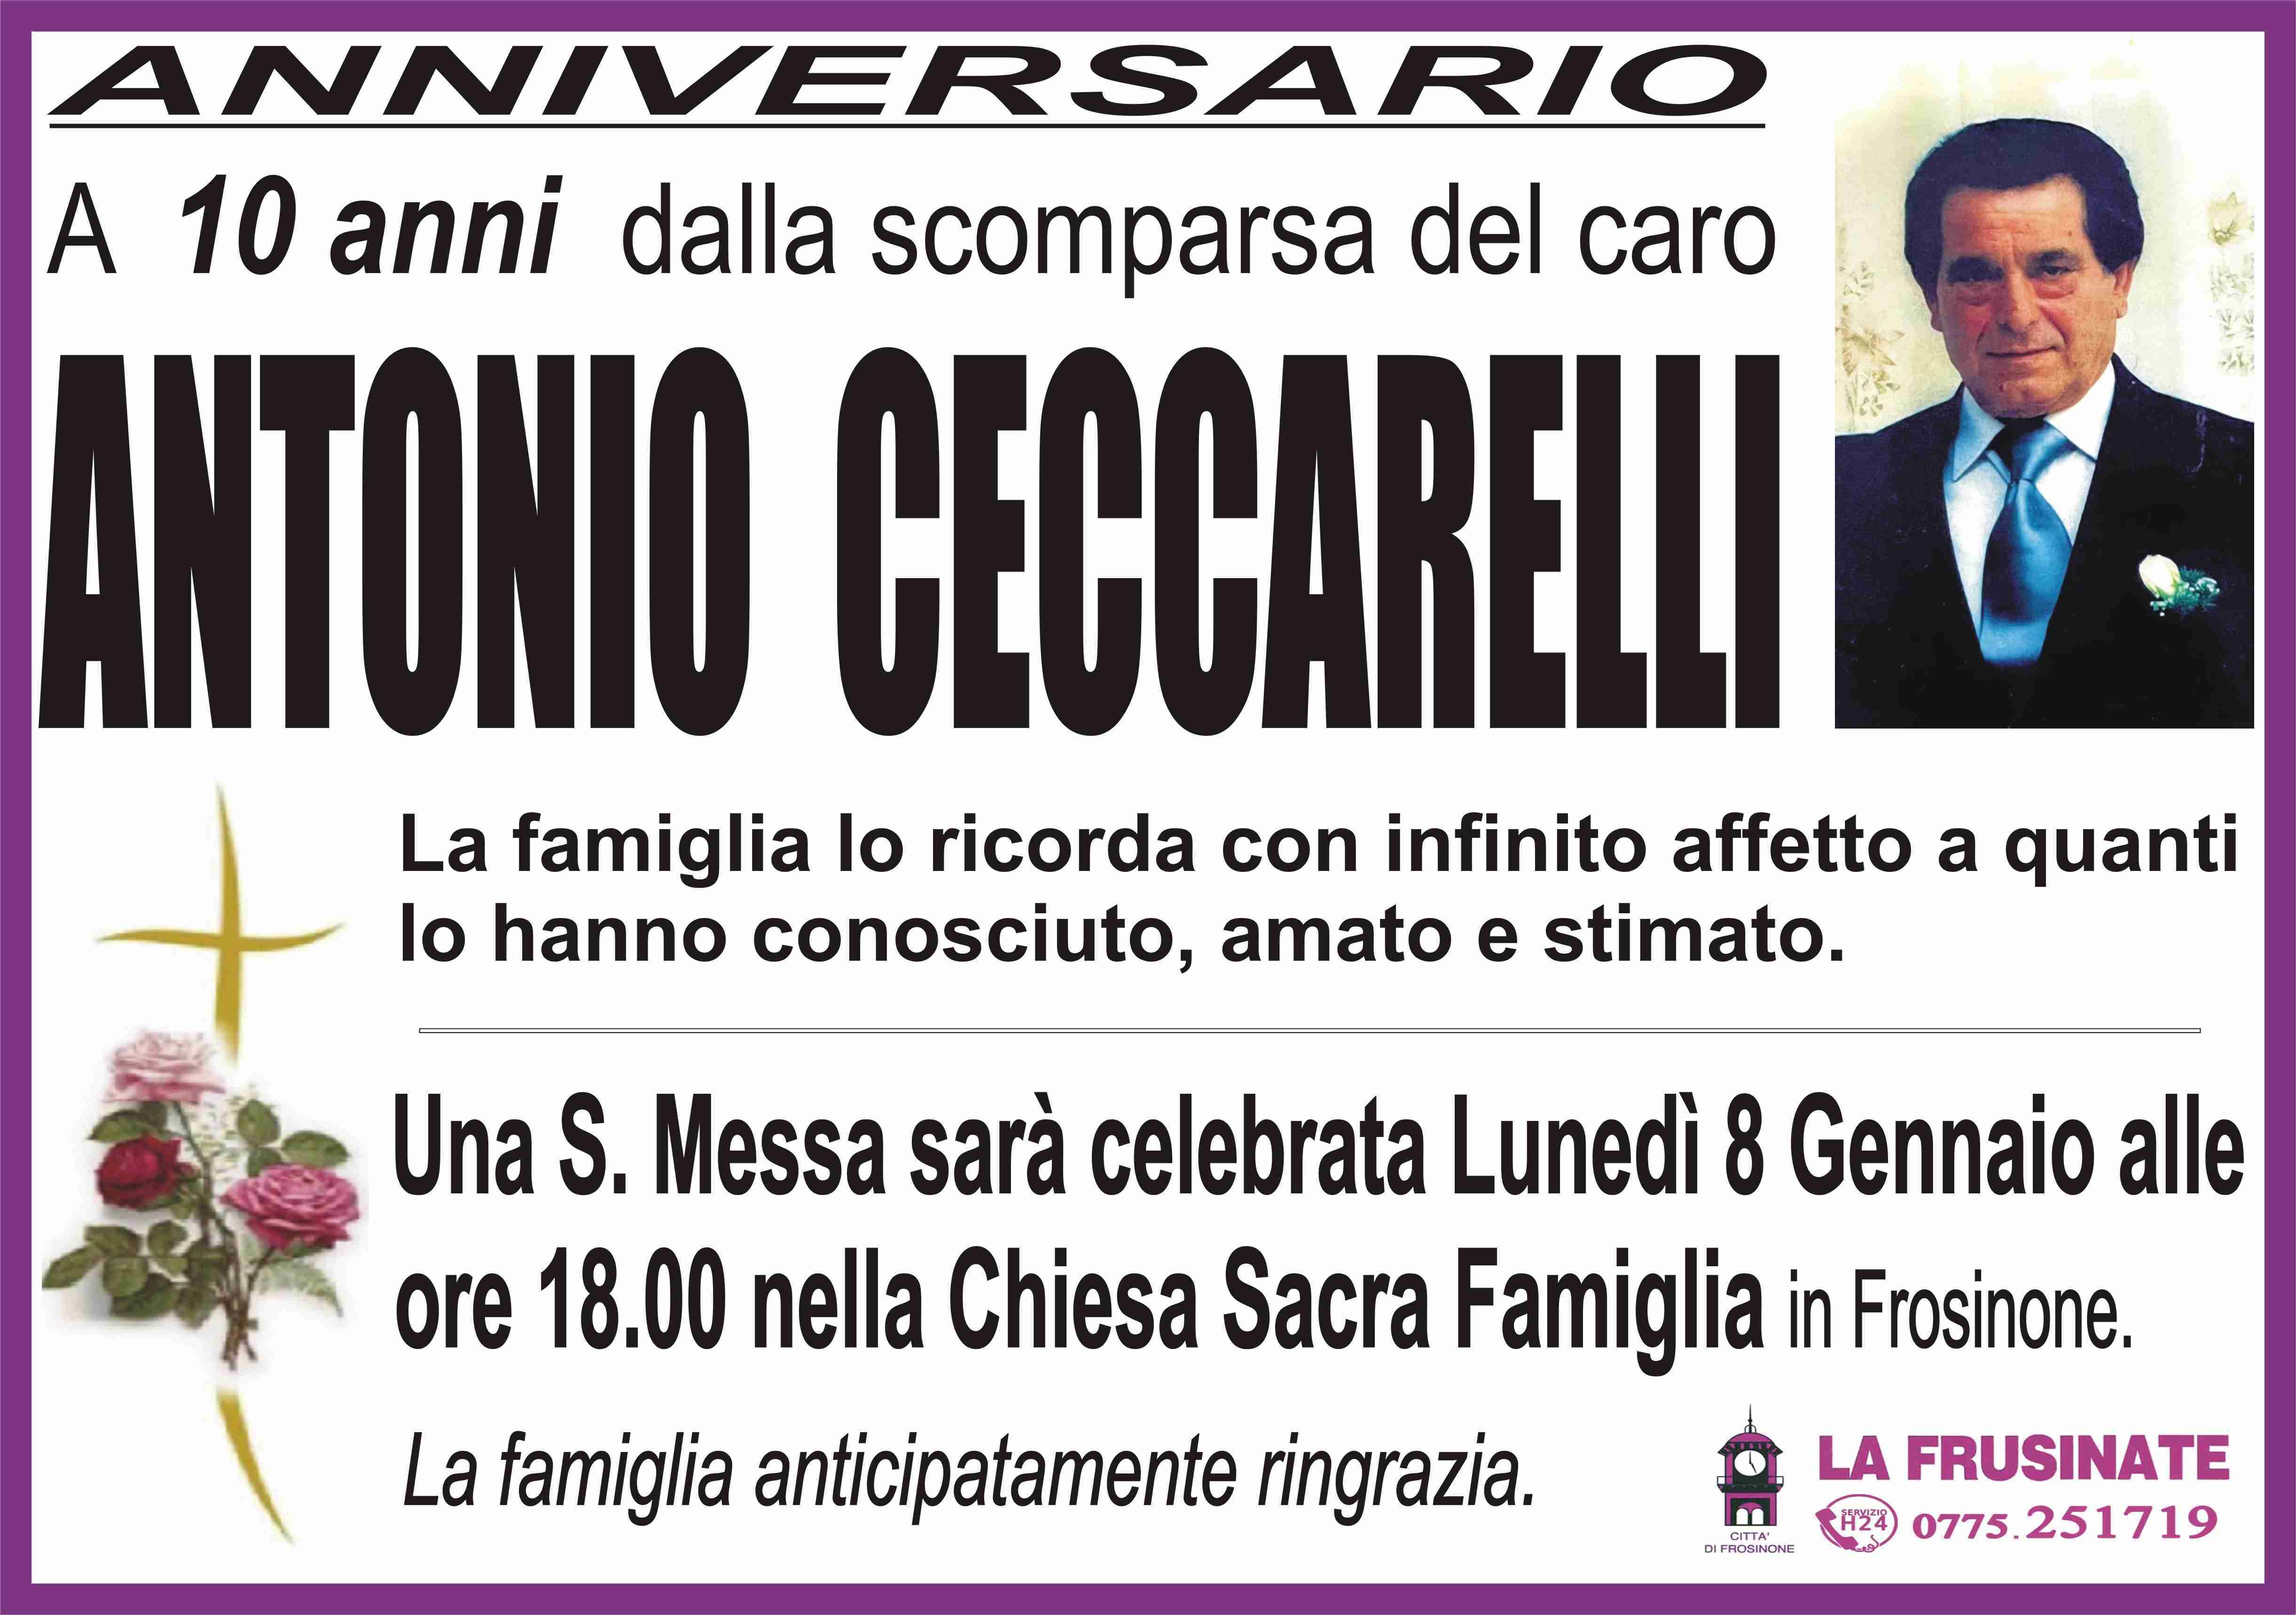 Antonio Ceccarelli